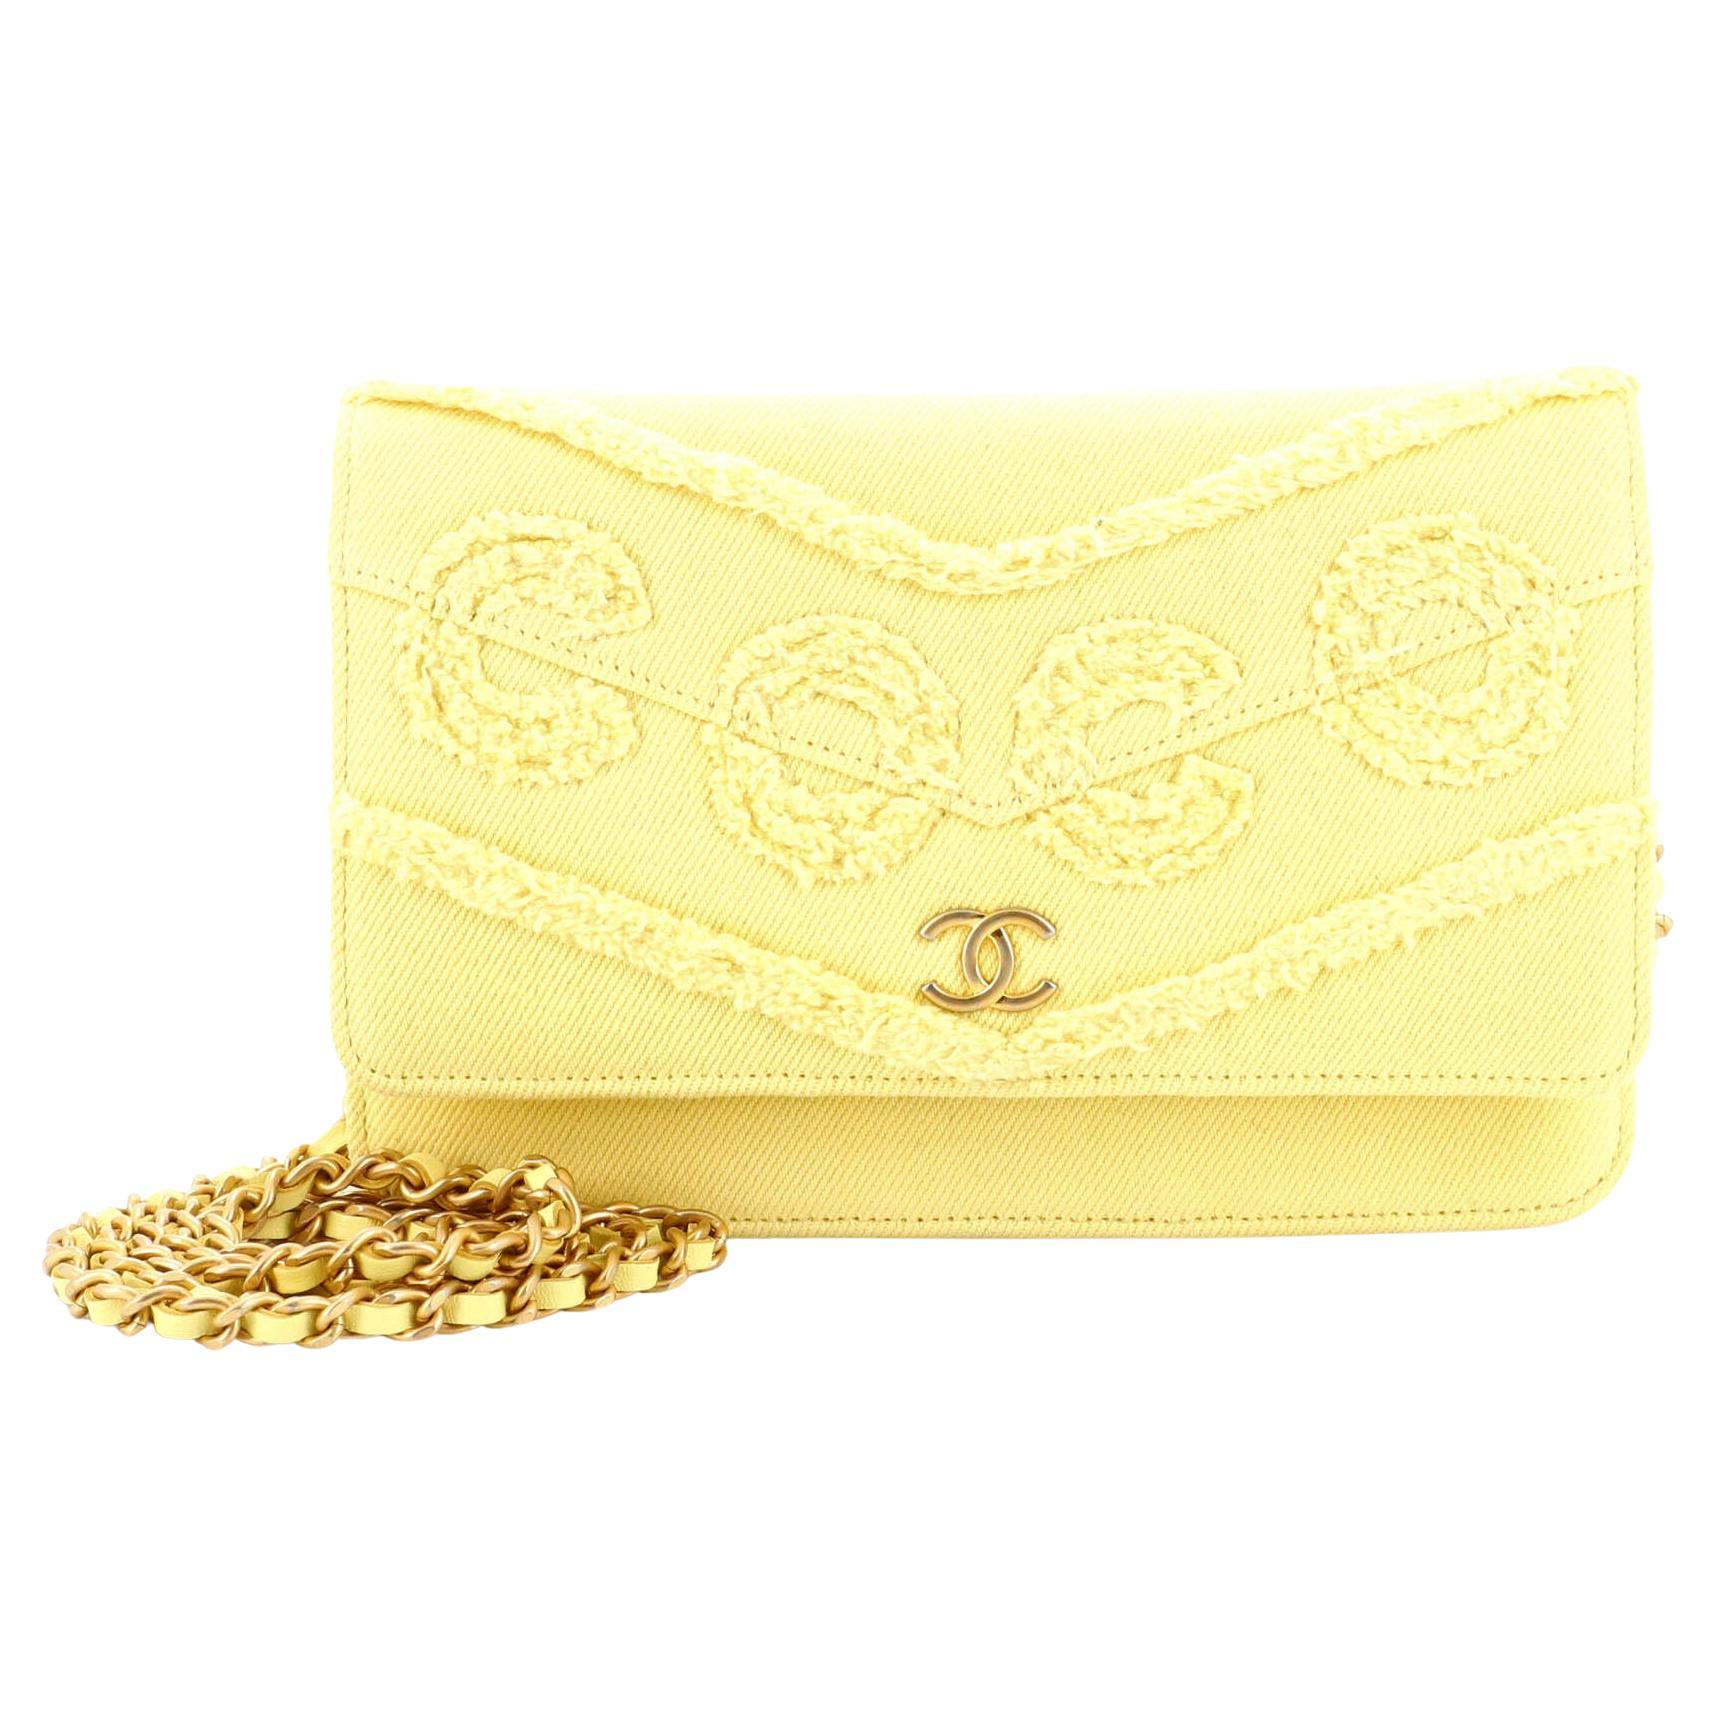 Chanel Denim Wallet - 6 For Sale on 1stDibs